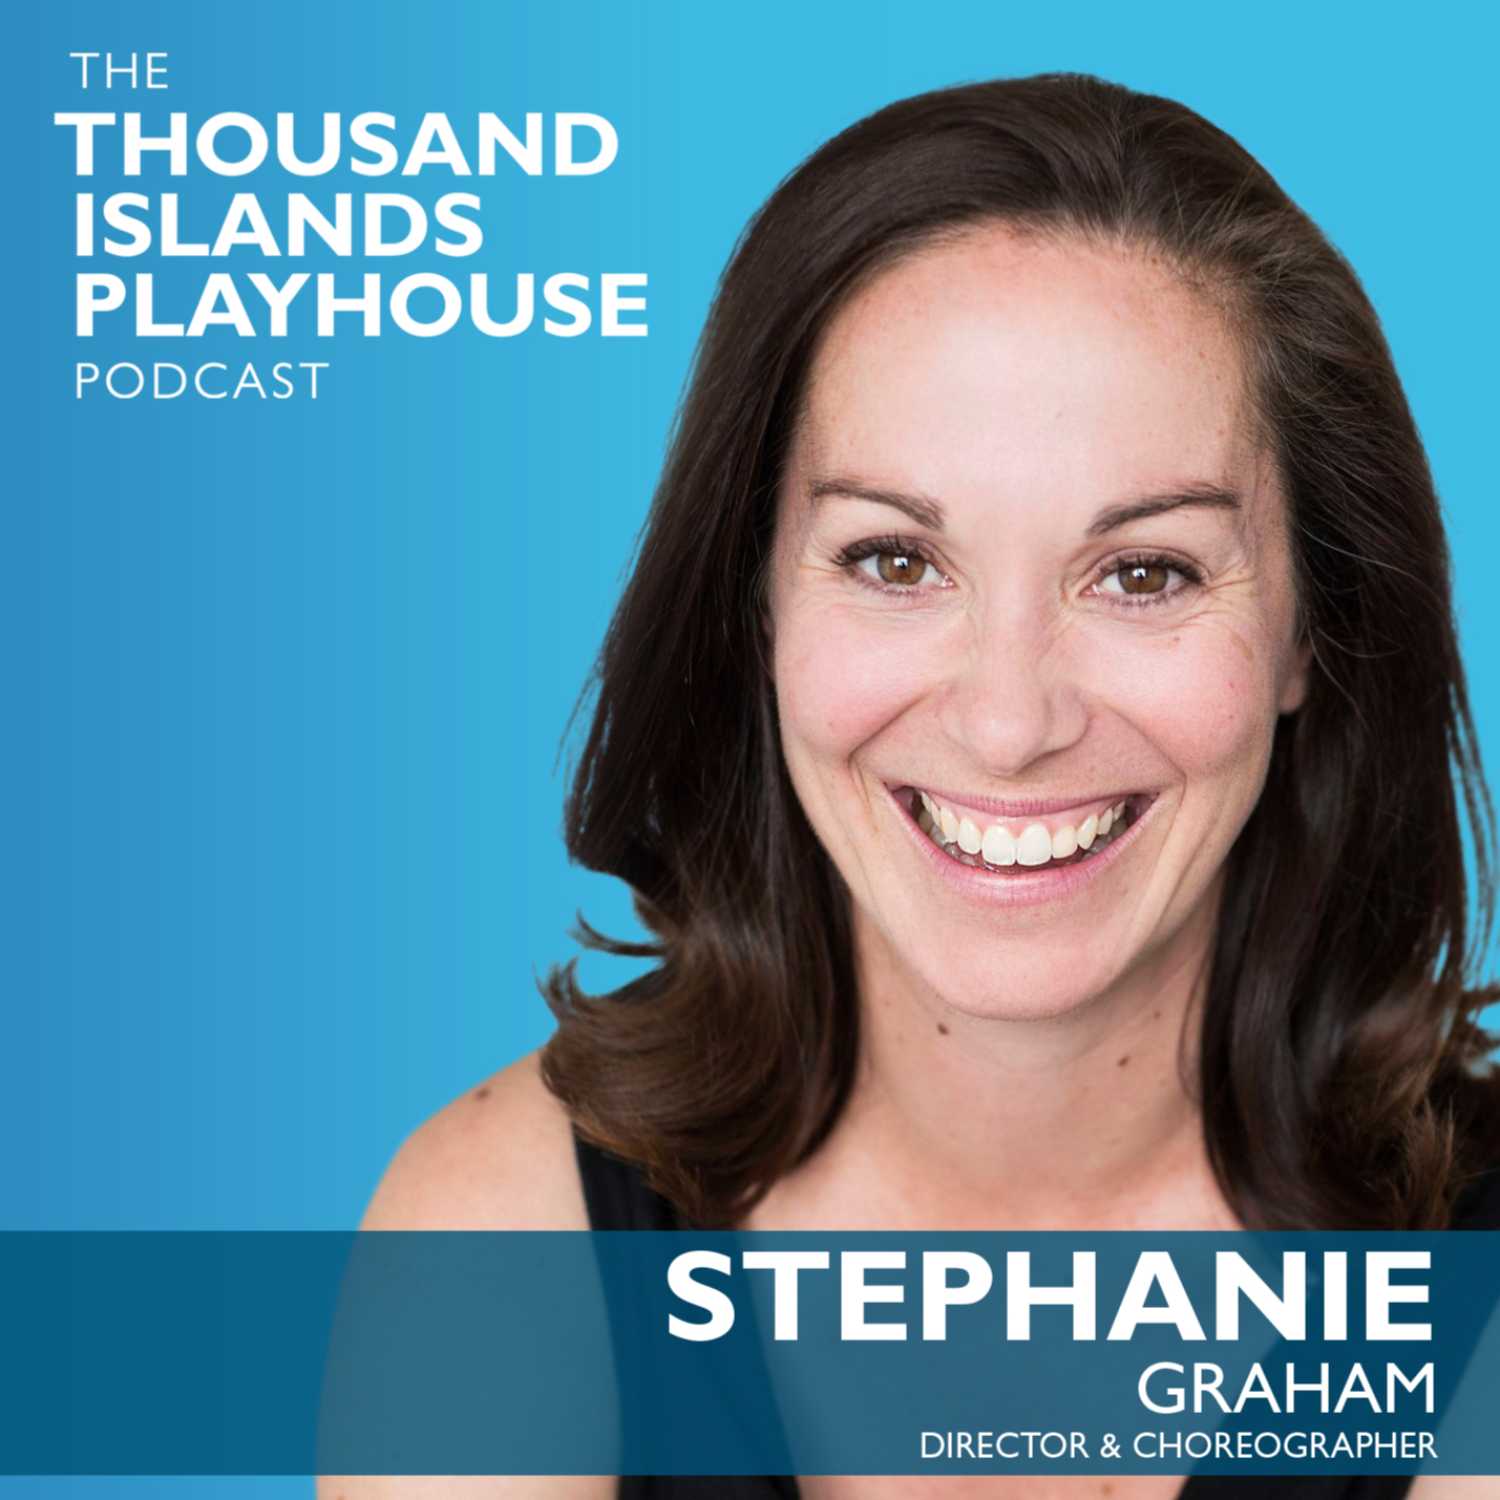 Back in '59: Stephanie Graham